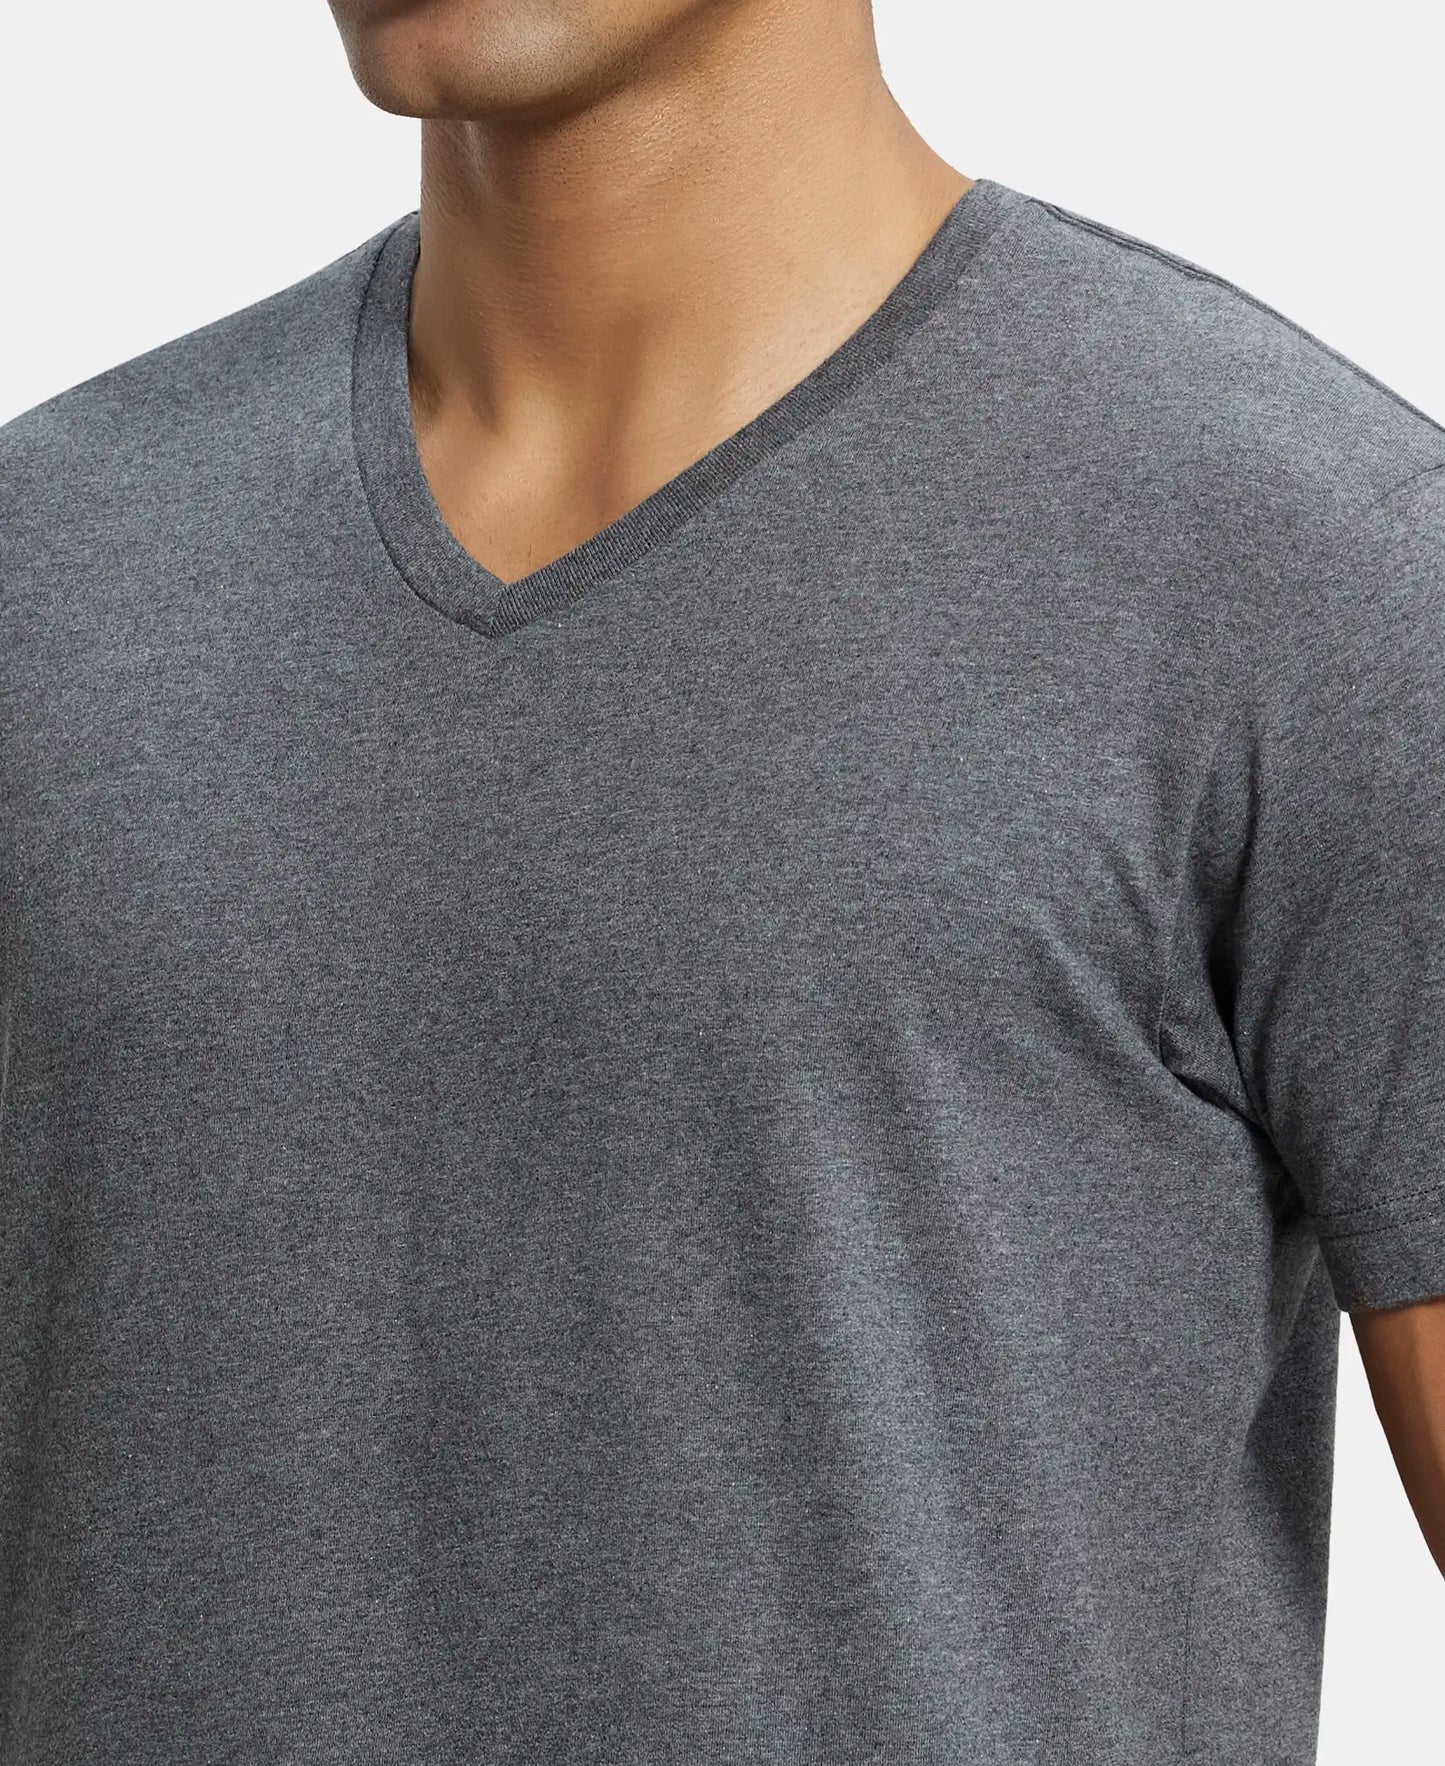 Super Combed Cotton Rich Solid V Neck Half Sleeve T-Shirt  - Charcoal Melange-6